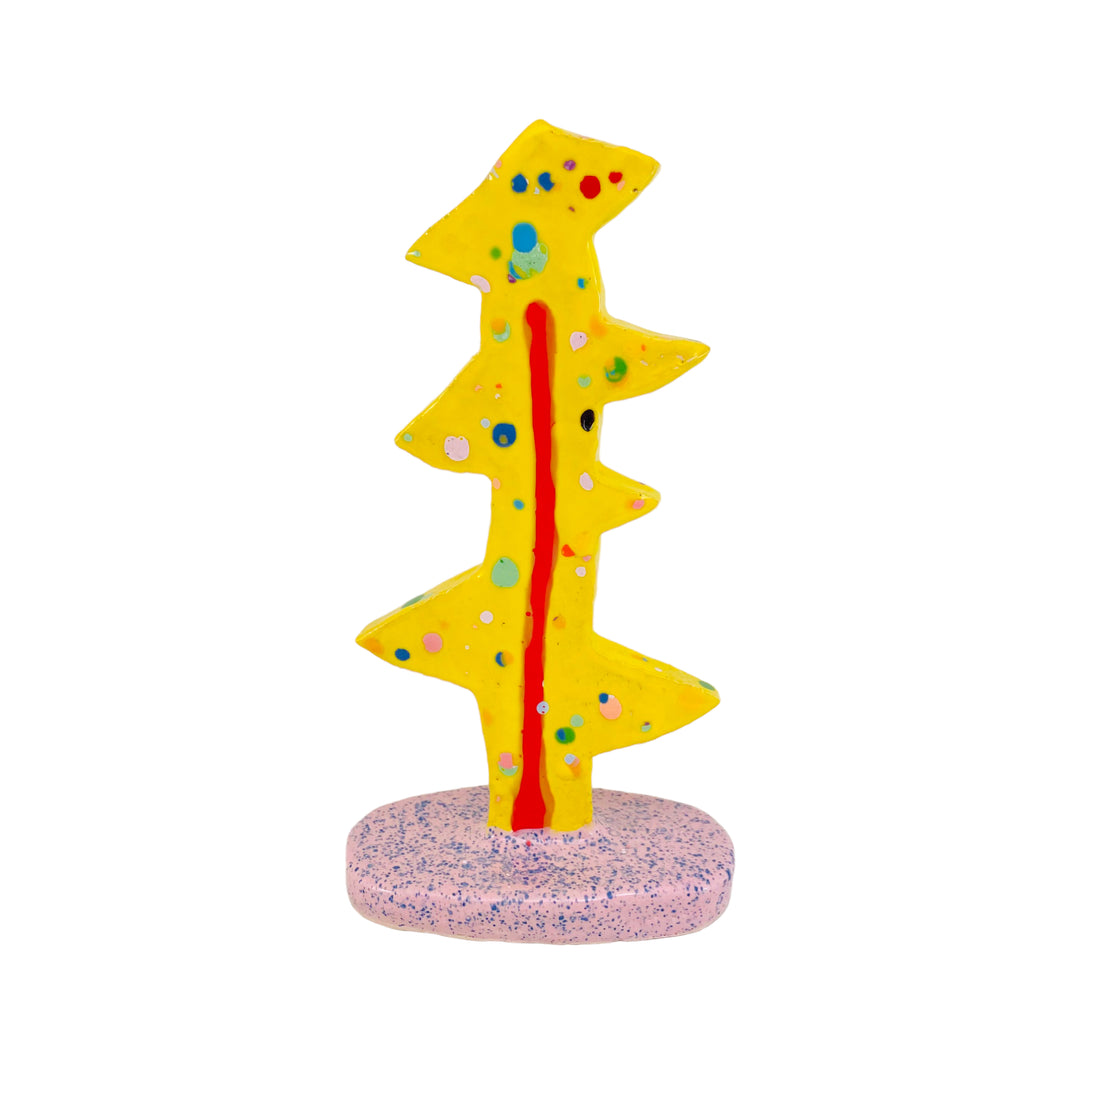 Større juletræ i gul med dots